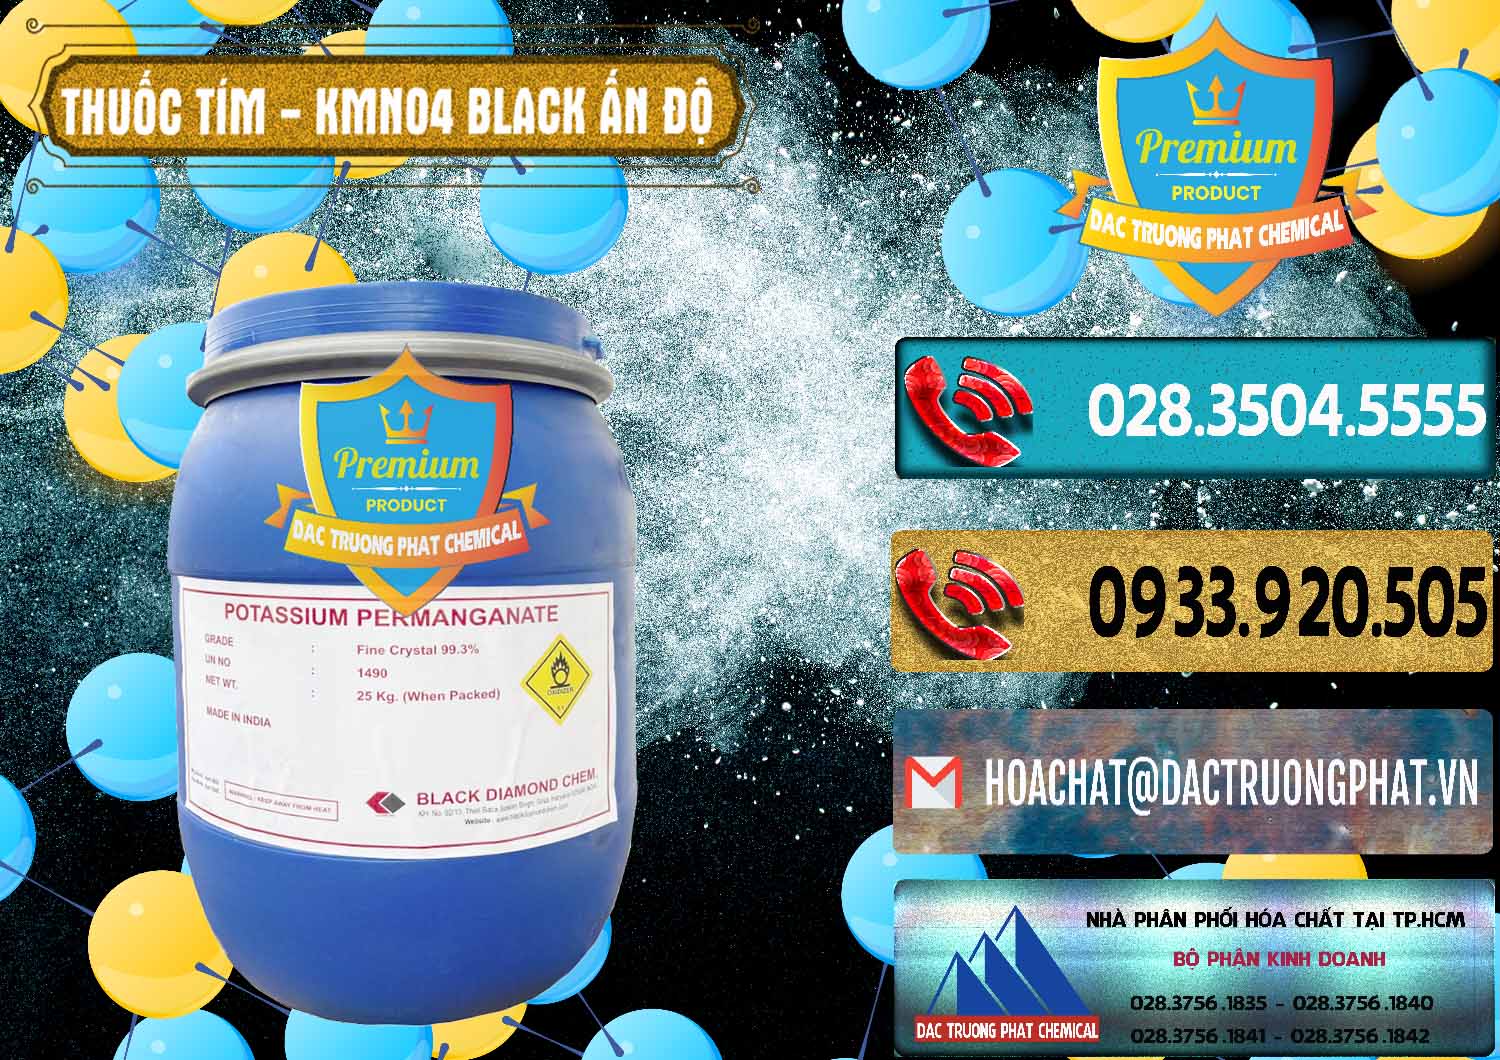 Công ty bán - phân phối Thuốc Tím - KMNO4 Black Diamond Ấn Độ India - 0414 - Nhà phân phối và cung cấp hóa chất tại TP.HCM - hoachatdetnhuom.com